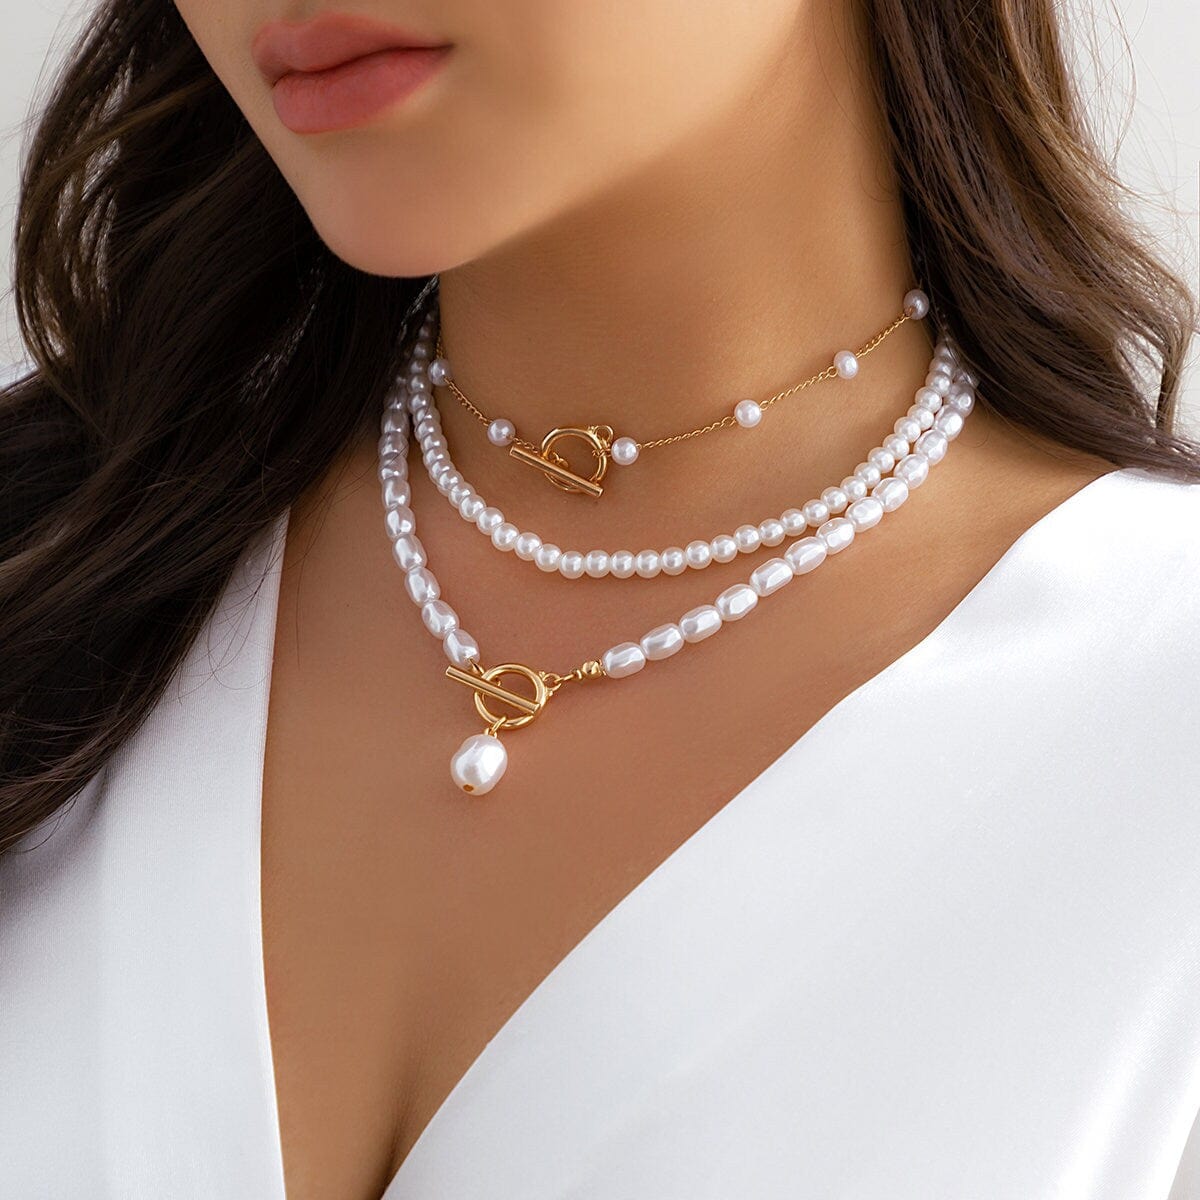 Attractive Plain White Oval Pearl Necklace - Modi Pearls